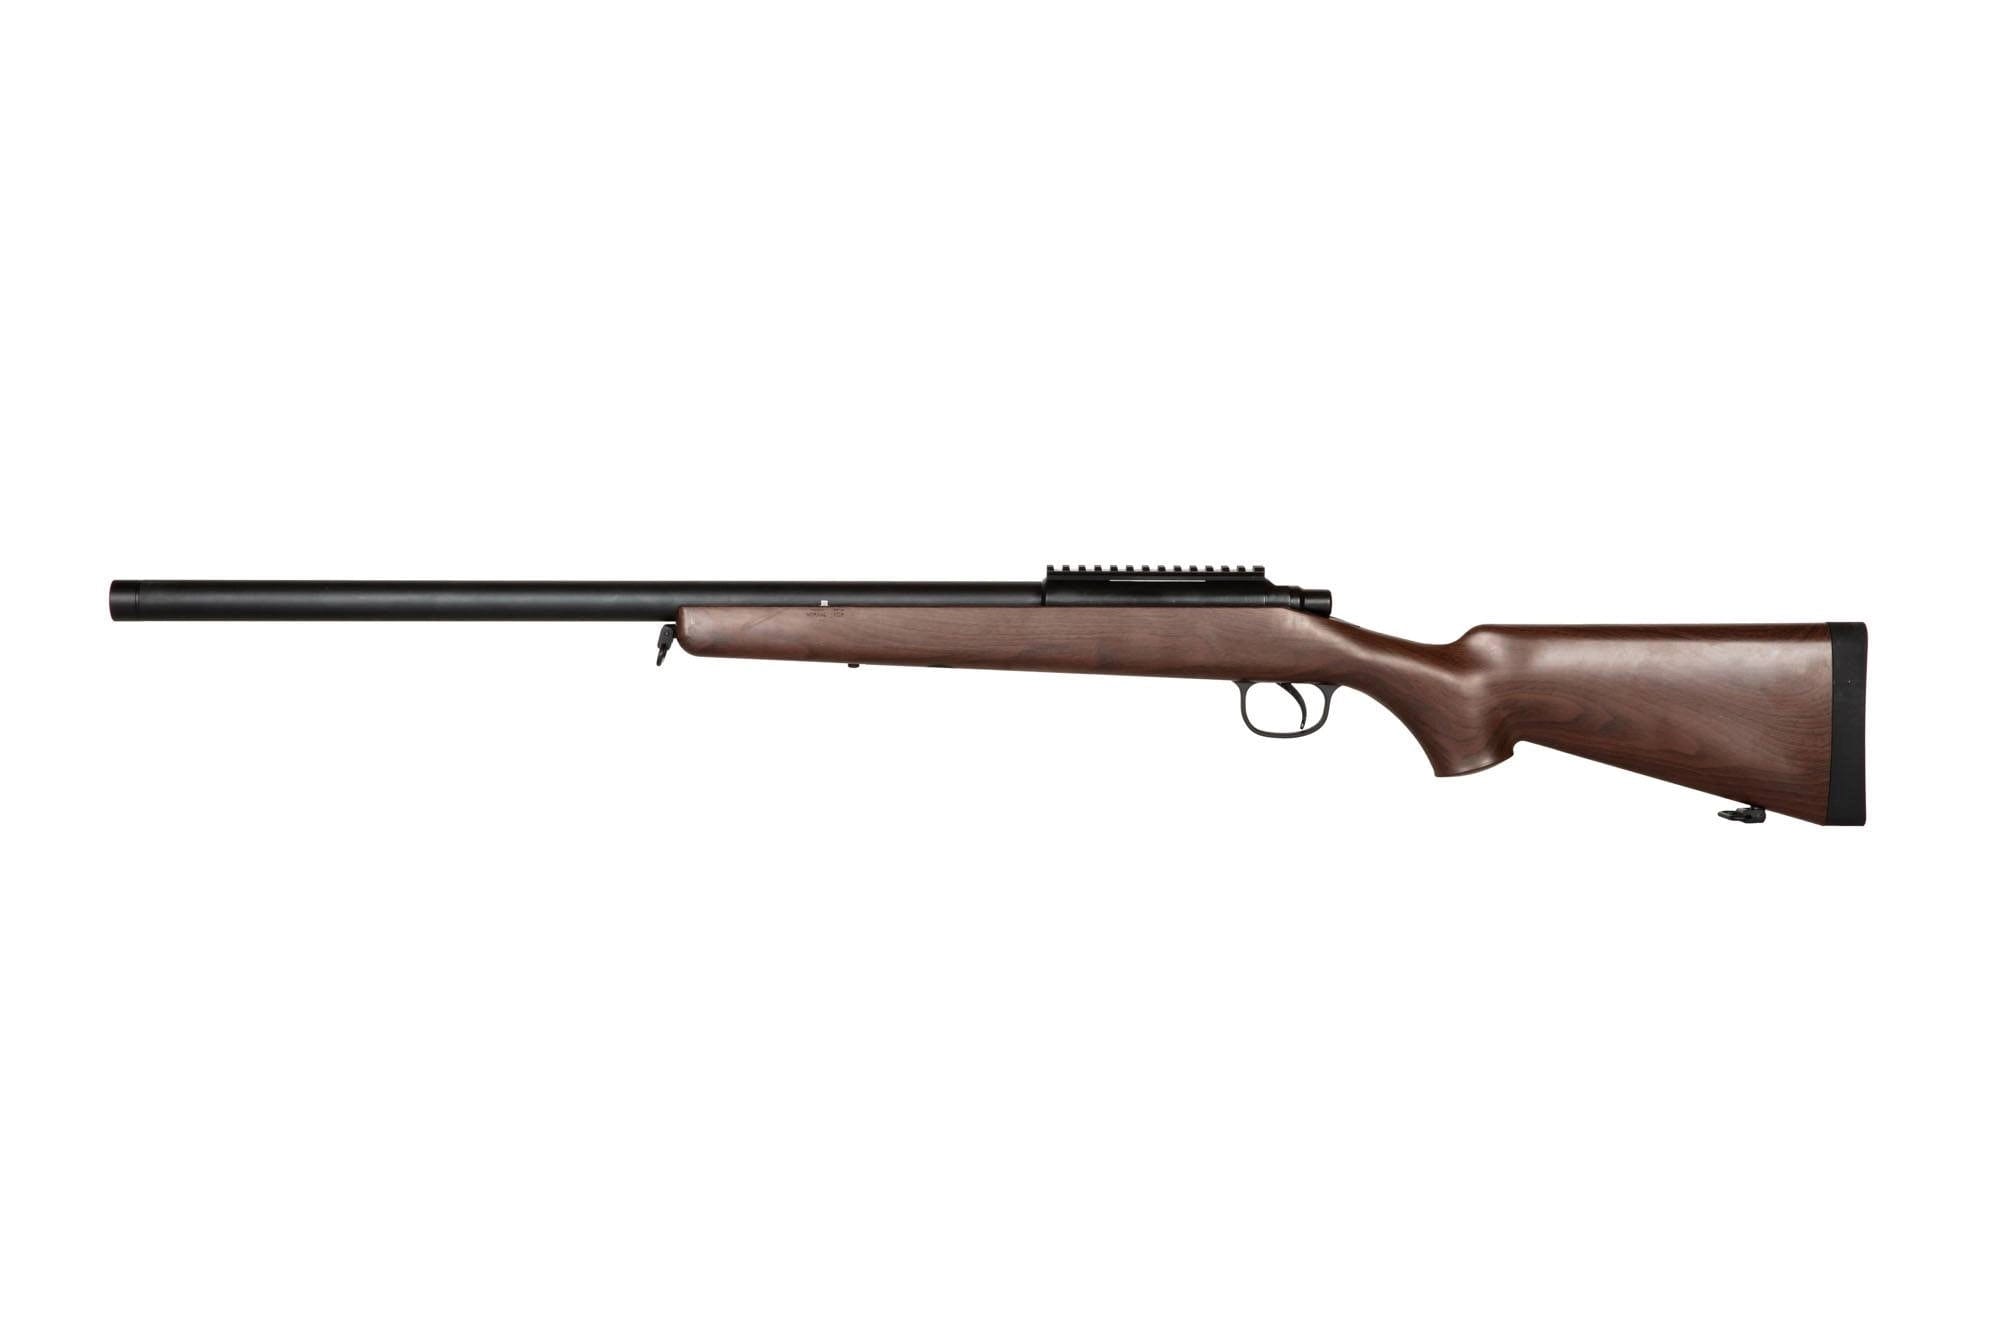 210 Sniper rifle replica - Wooden